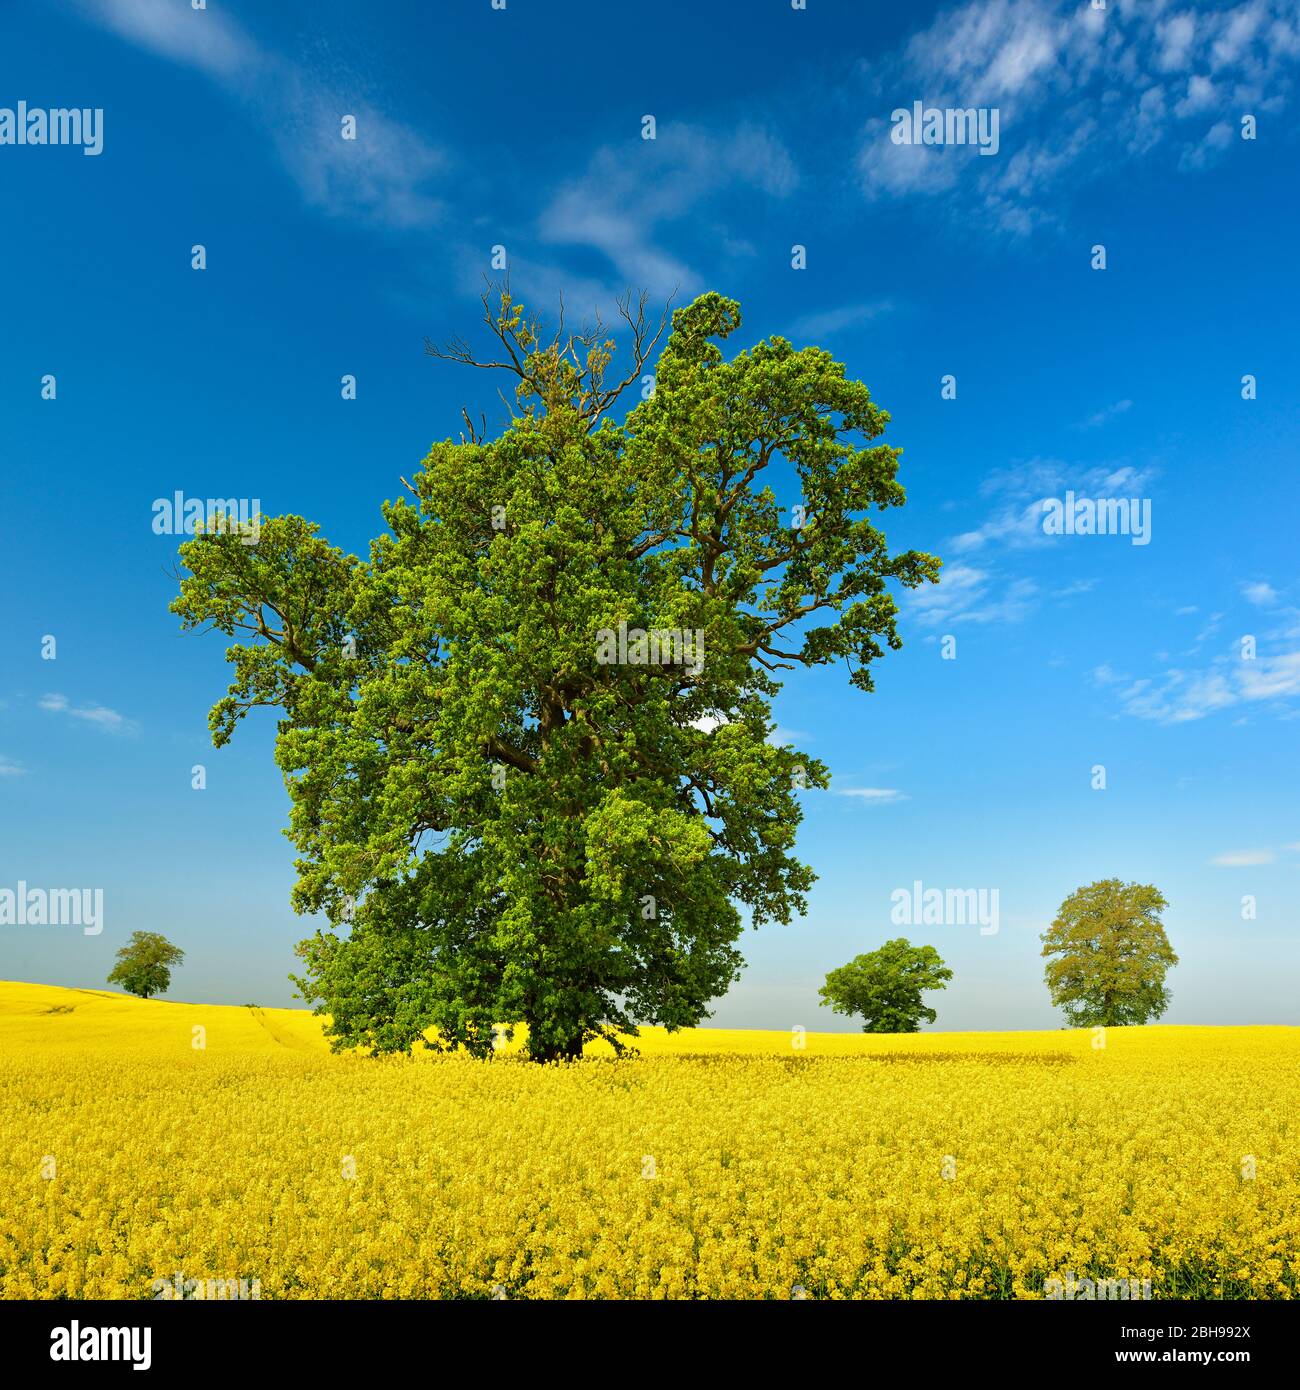 Blühendes Rapsfeld mit alten solitären Eichen, blauer Himmel mit Schönwetterwolken, Mecklenburgische Schweiz, Mecklenburg-Vorpommern, Deutschland Stock Photo